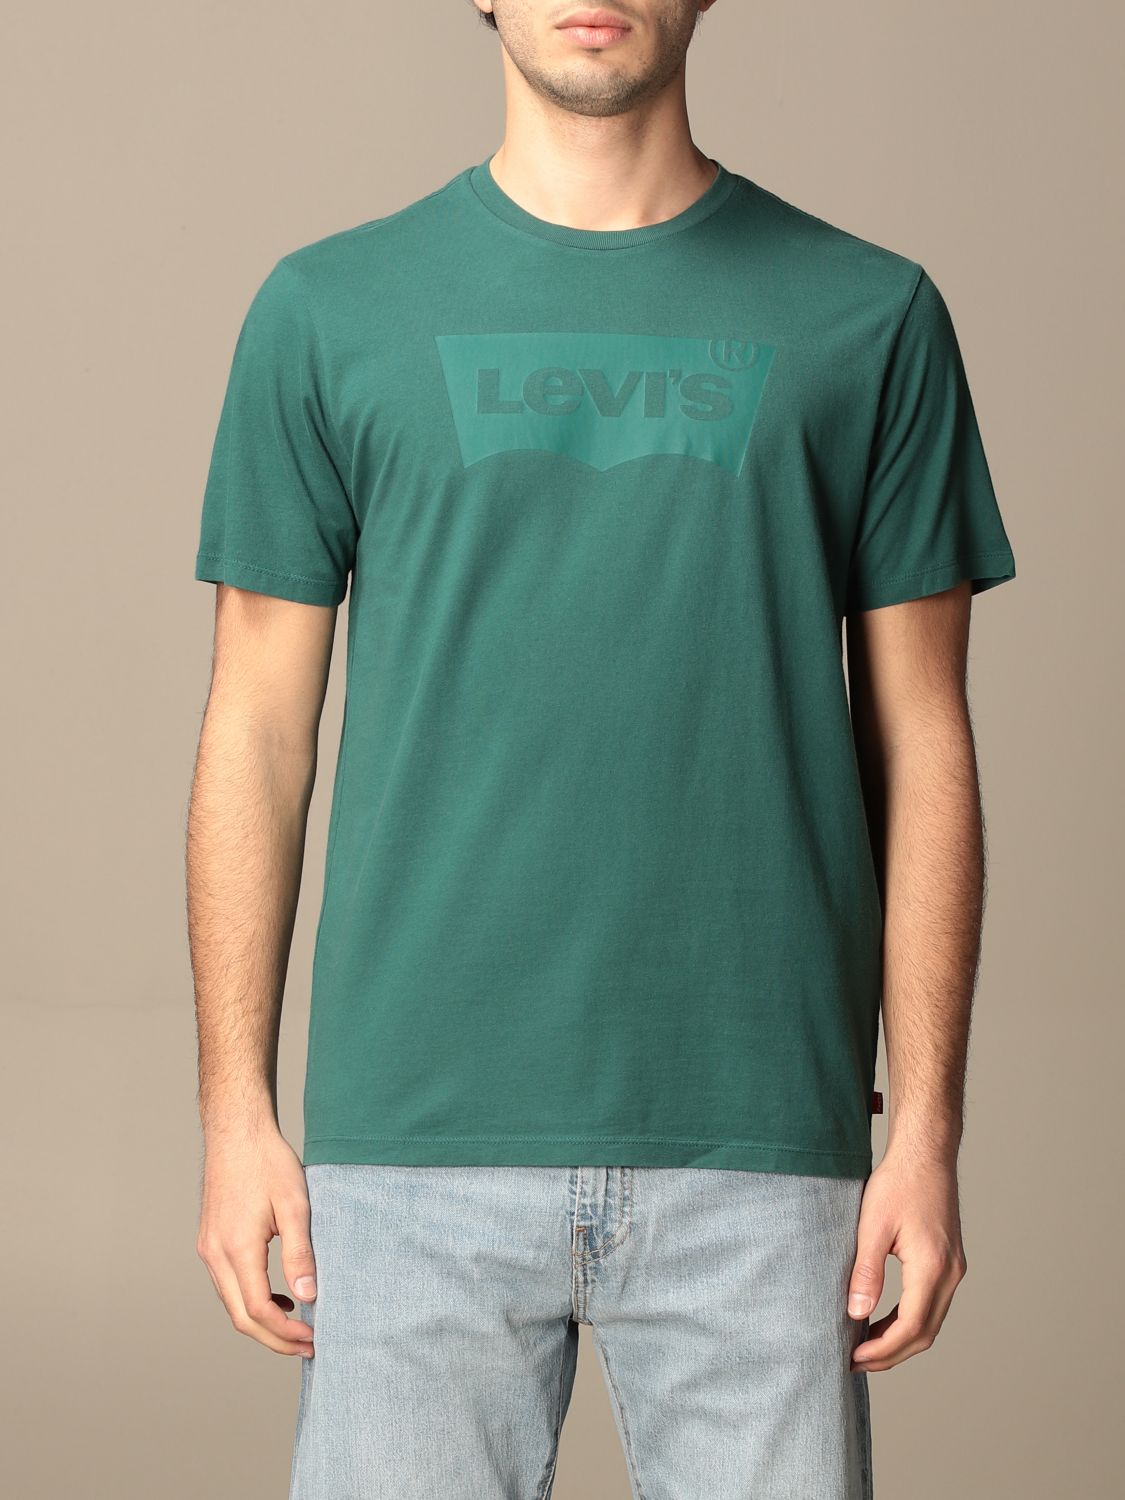 levis green shirt